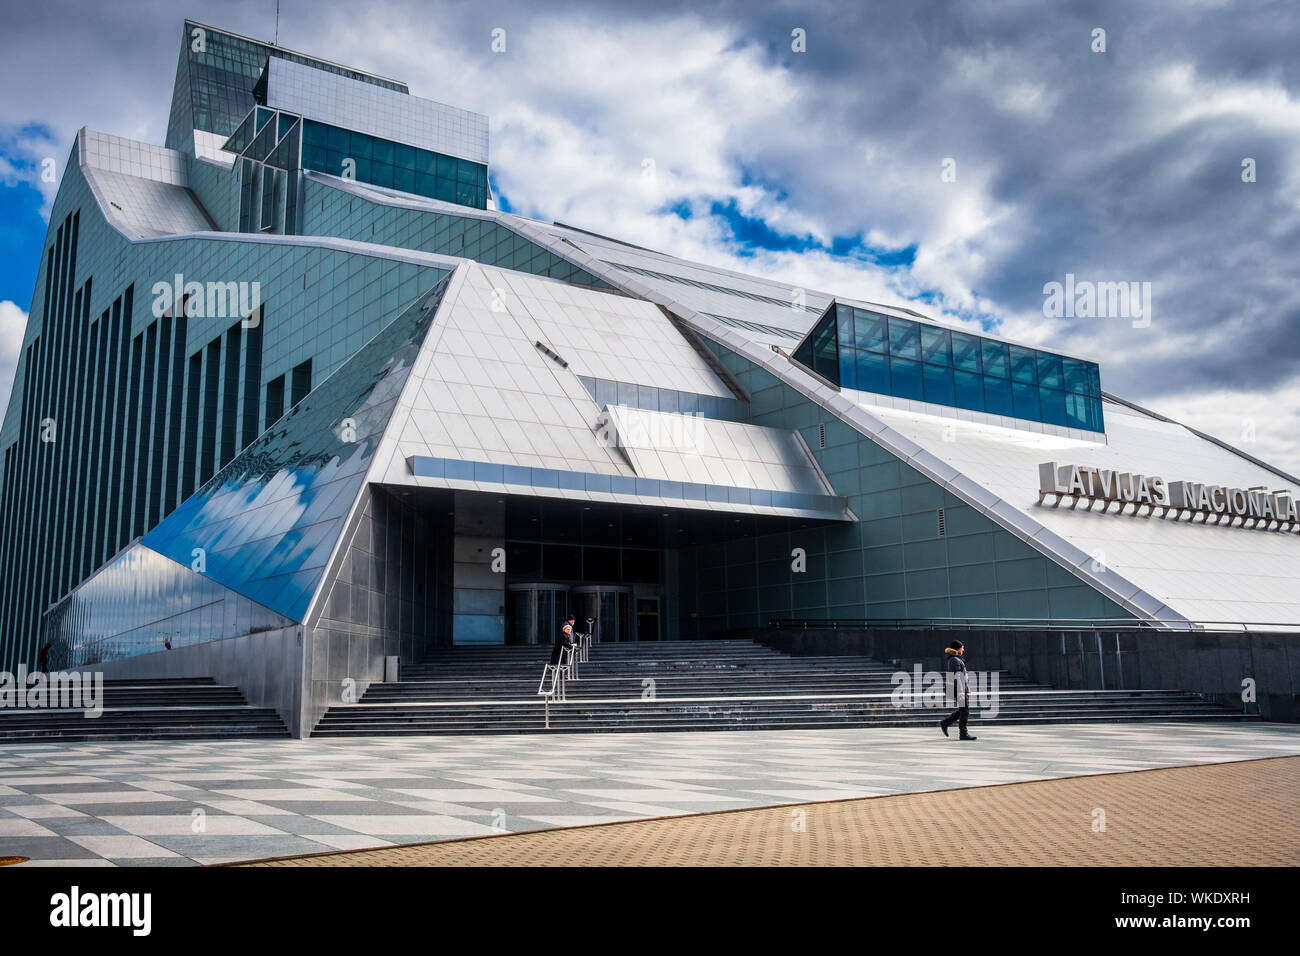 Lettland, Riga. Die nationale Bibliothek, 13-stöckiges Gebäude aus Glas und Metall, mit einer Sammlung von 6 Millionen Bücher, am Ufer des Flusses Dauvaga. Pedes Stockfoto